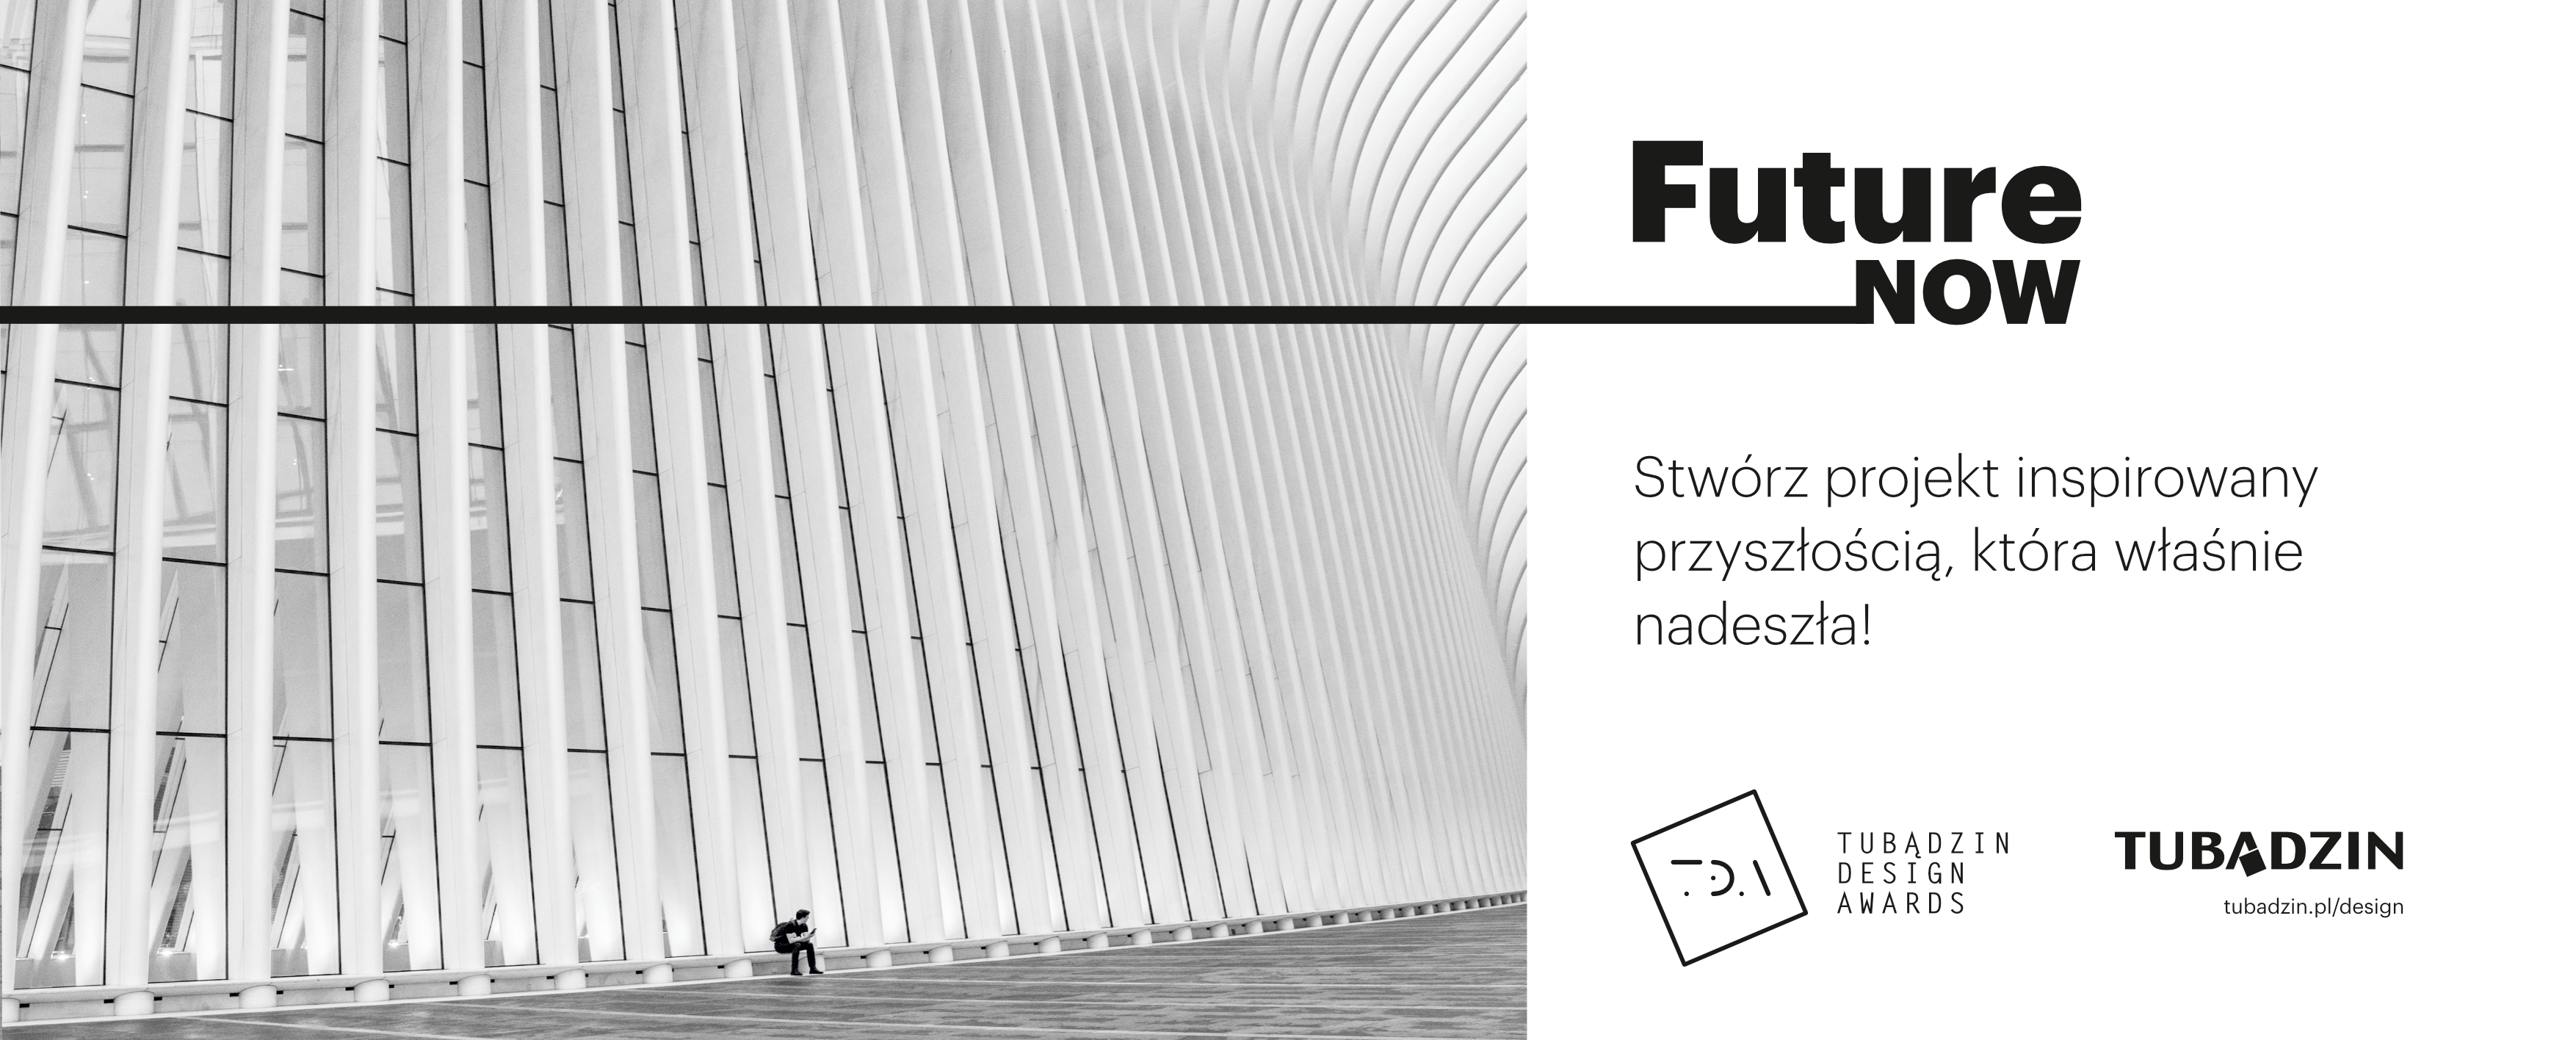 FutureNow – dodatkowa kategoria Tubądzin Design Awards!